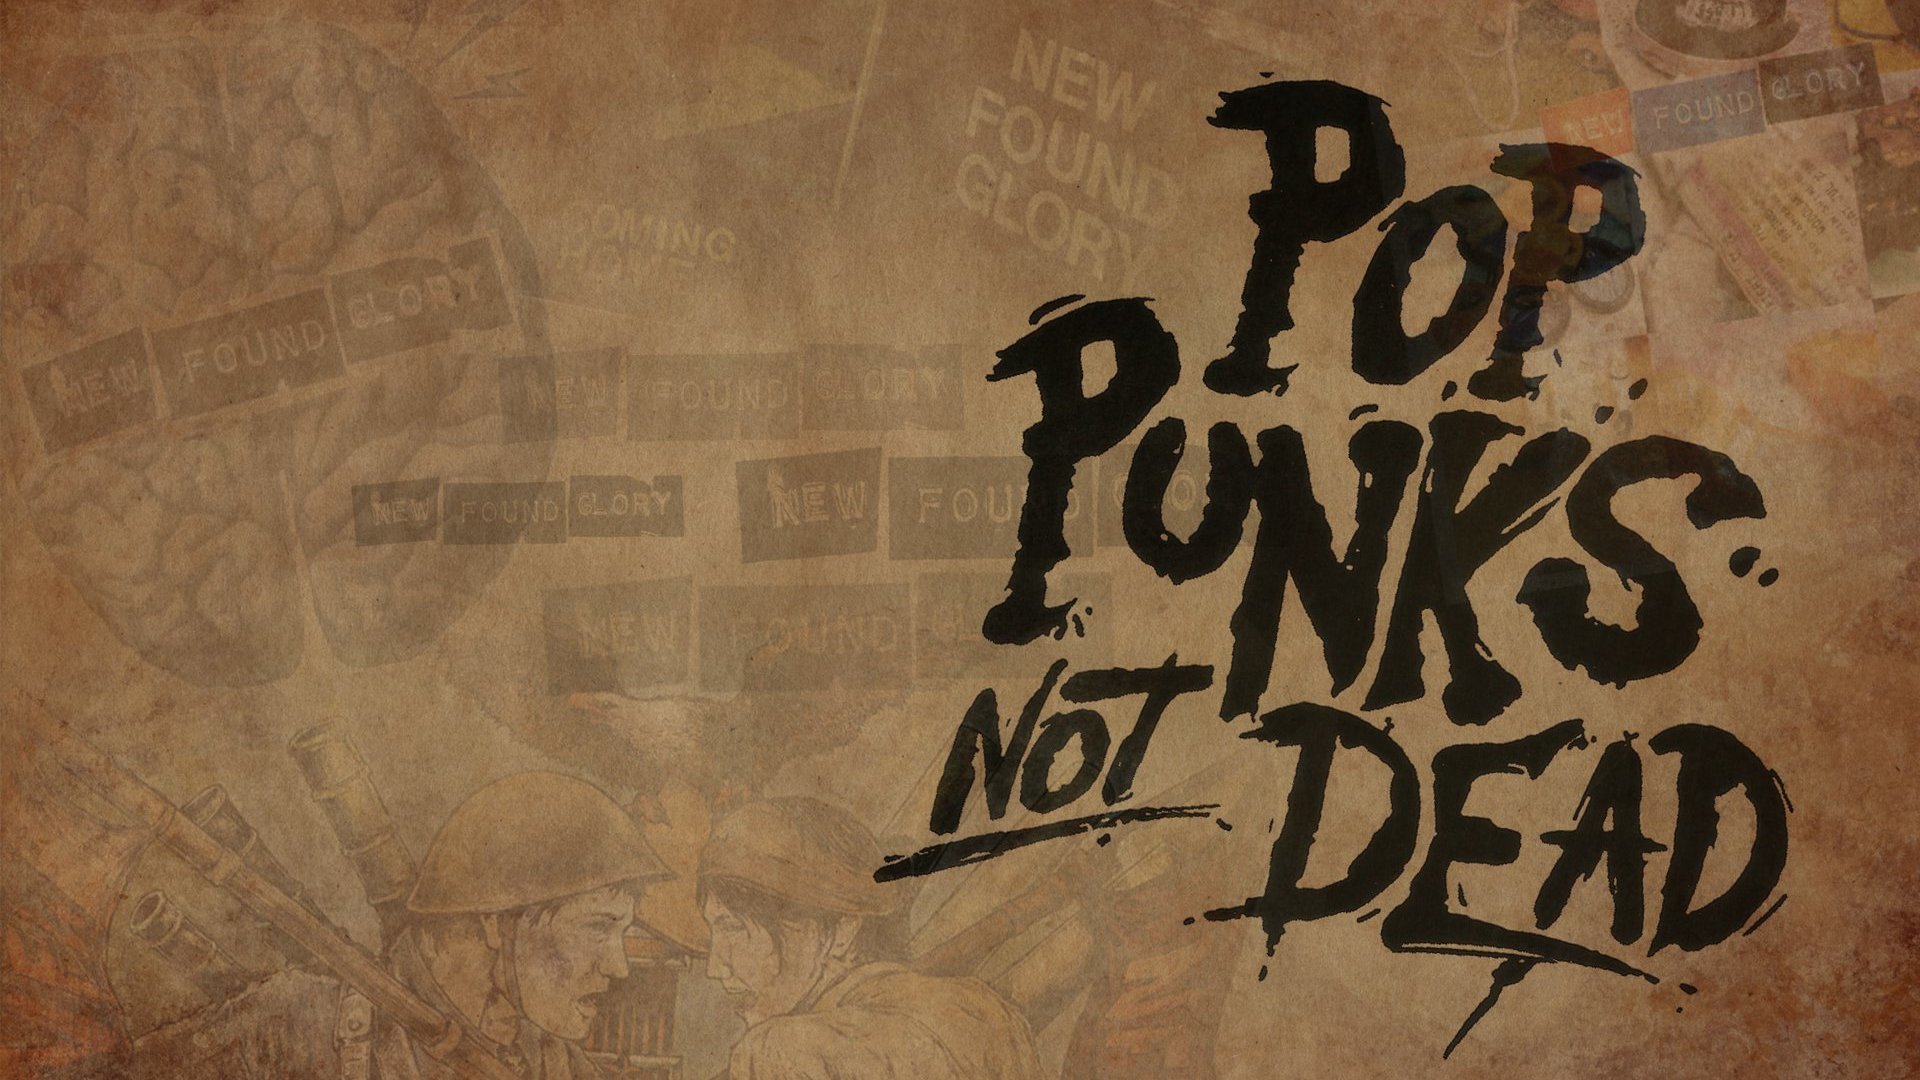 Pop Punks Not Dead - 1920x1080 Wallpaper 